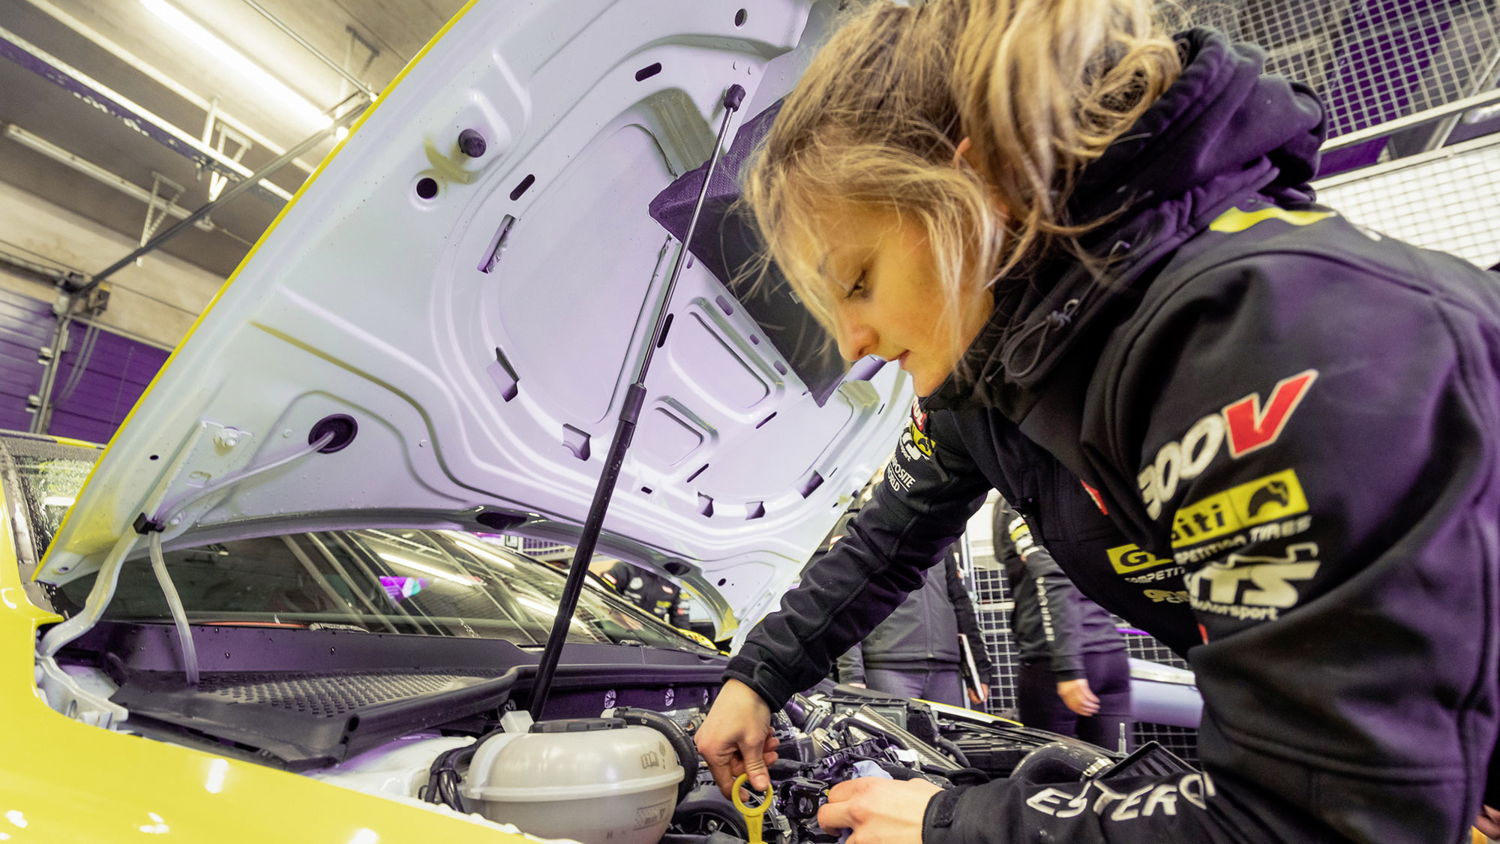 24 horas de extrema presión para el auto: El Golf GTI TCR, probado en la batalla, está en buenas manos con las mecánicas de “Girls Only”.